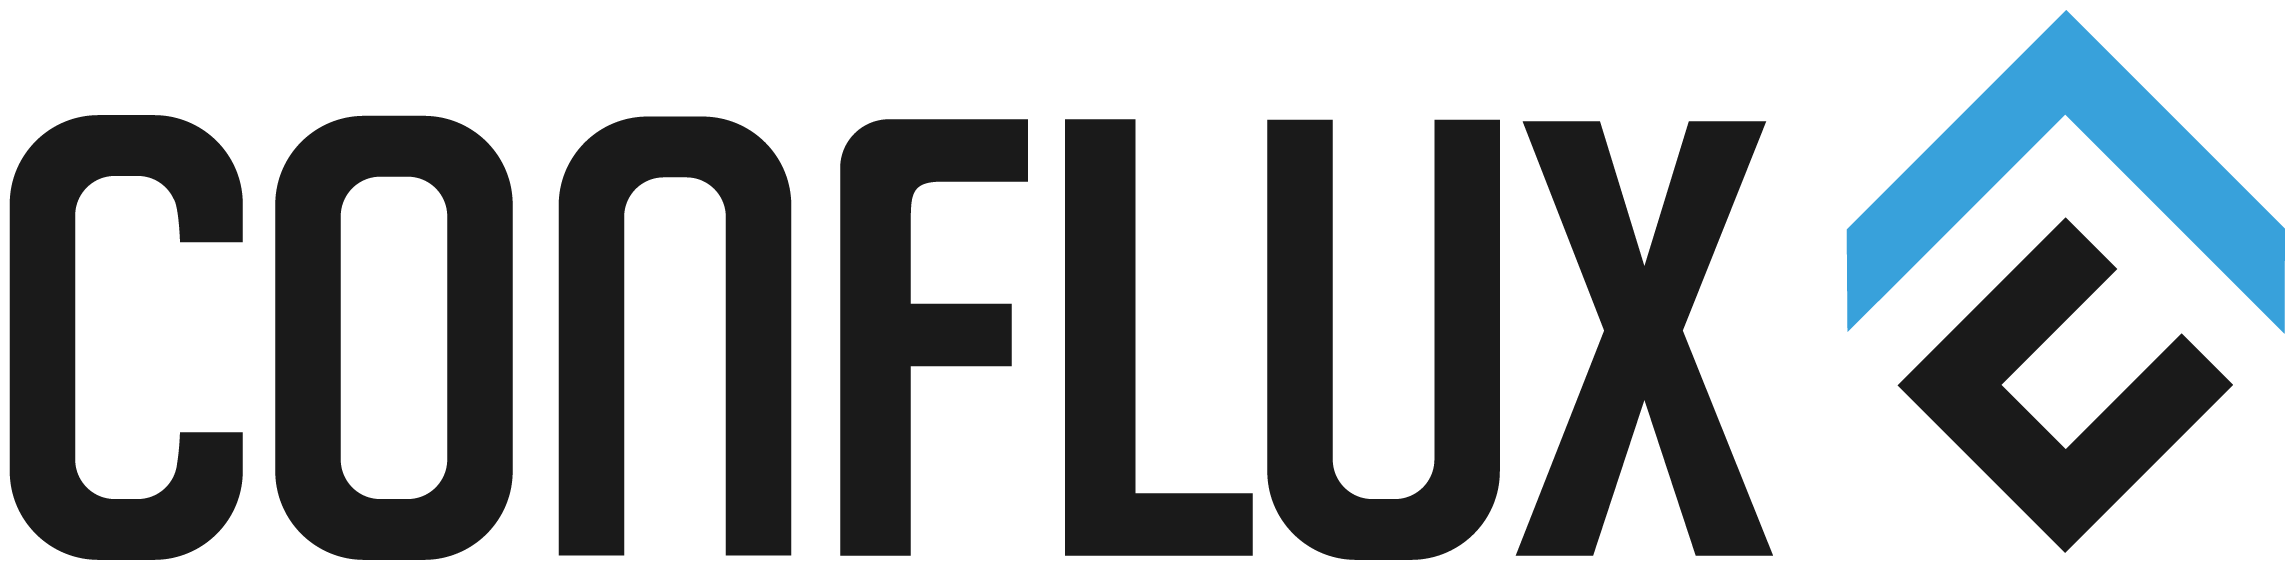 Conflux logo colors